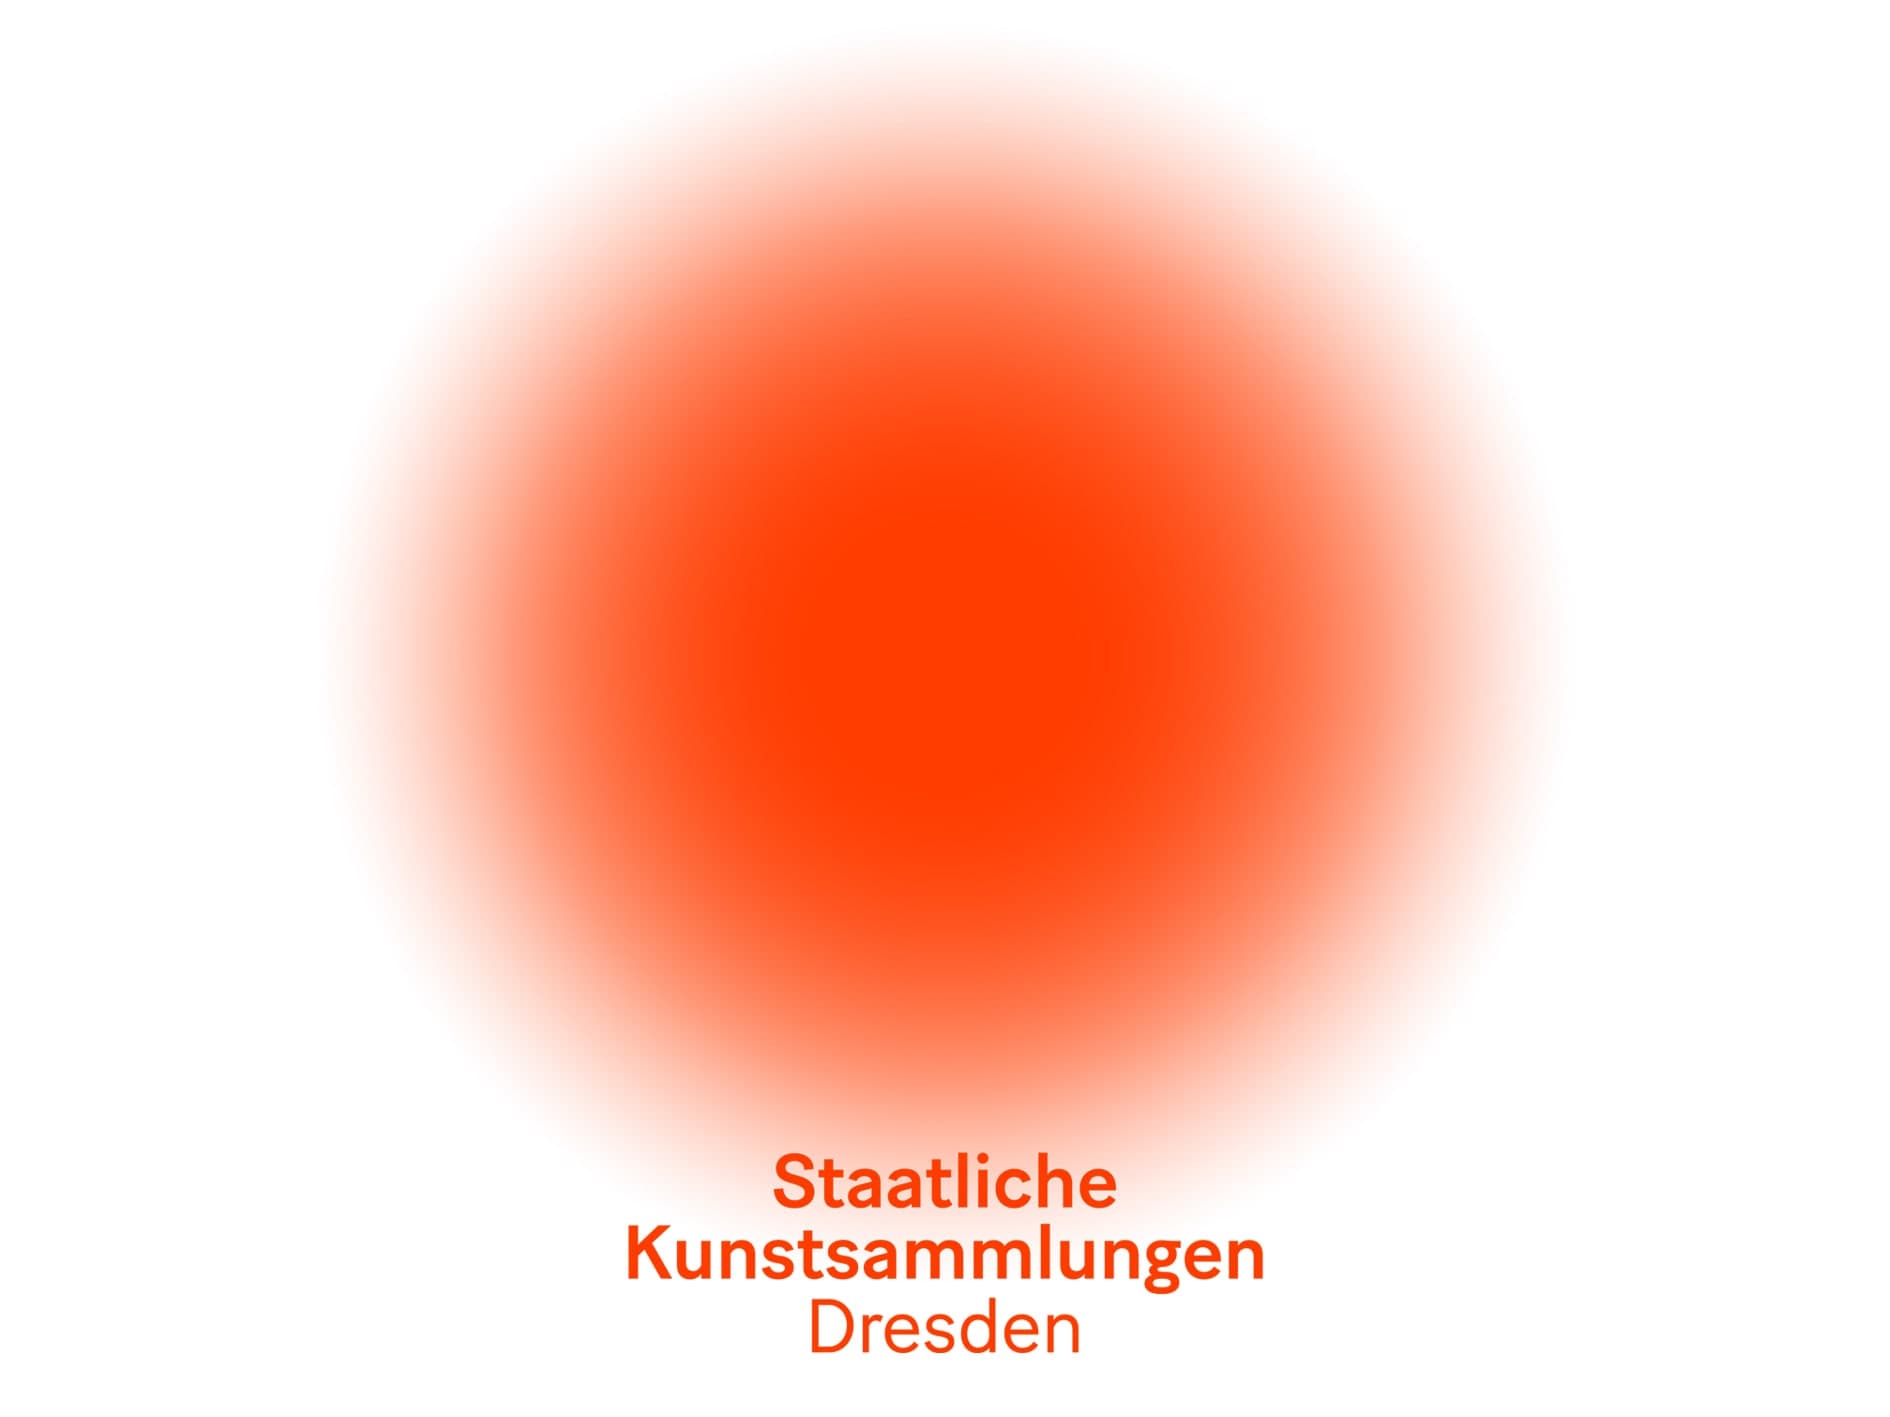 Staatliche Kunstsammlung Dresden logo